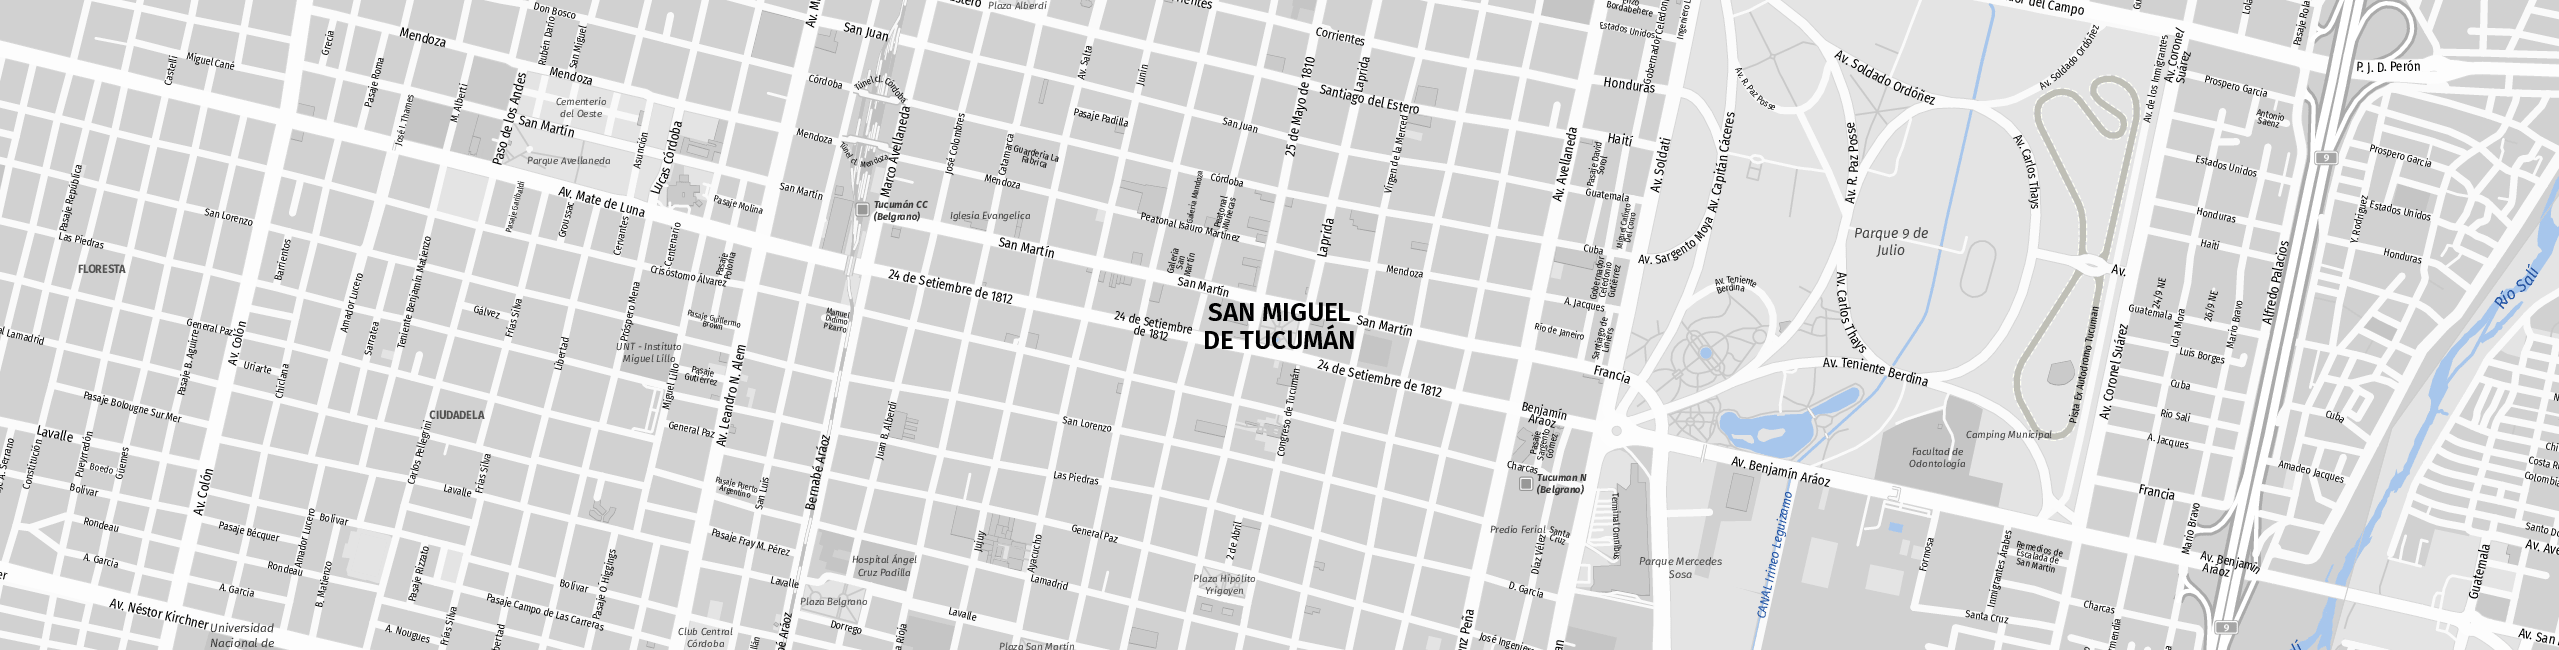 Stadtplan San Miguel de Tucumán zum Downloaden.